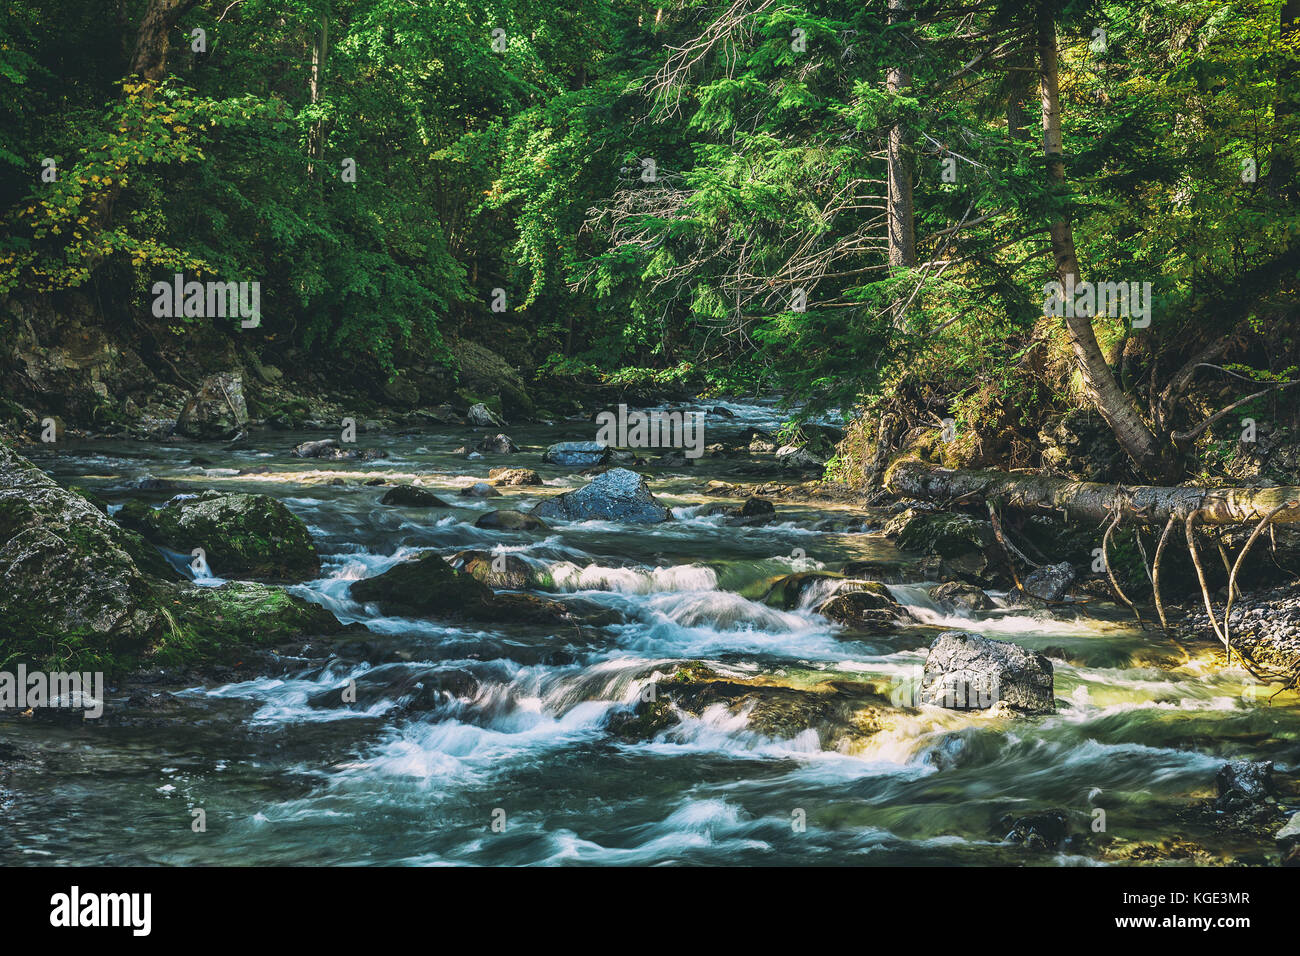 Panneaux creek entouré d'arbres dans le Parc National des Hautes Tatras, en Slovaquie. Automne nature thème avec aspect décoloré. Banque D'Images